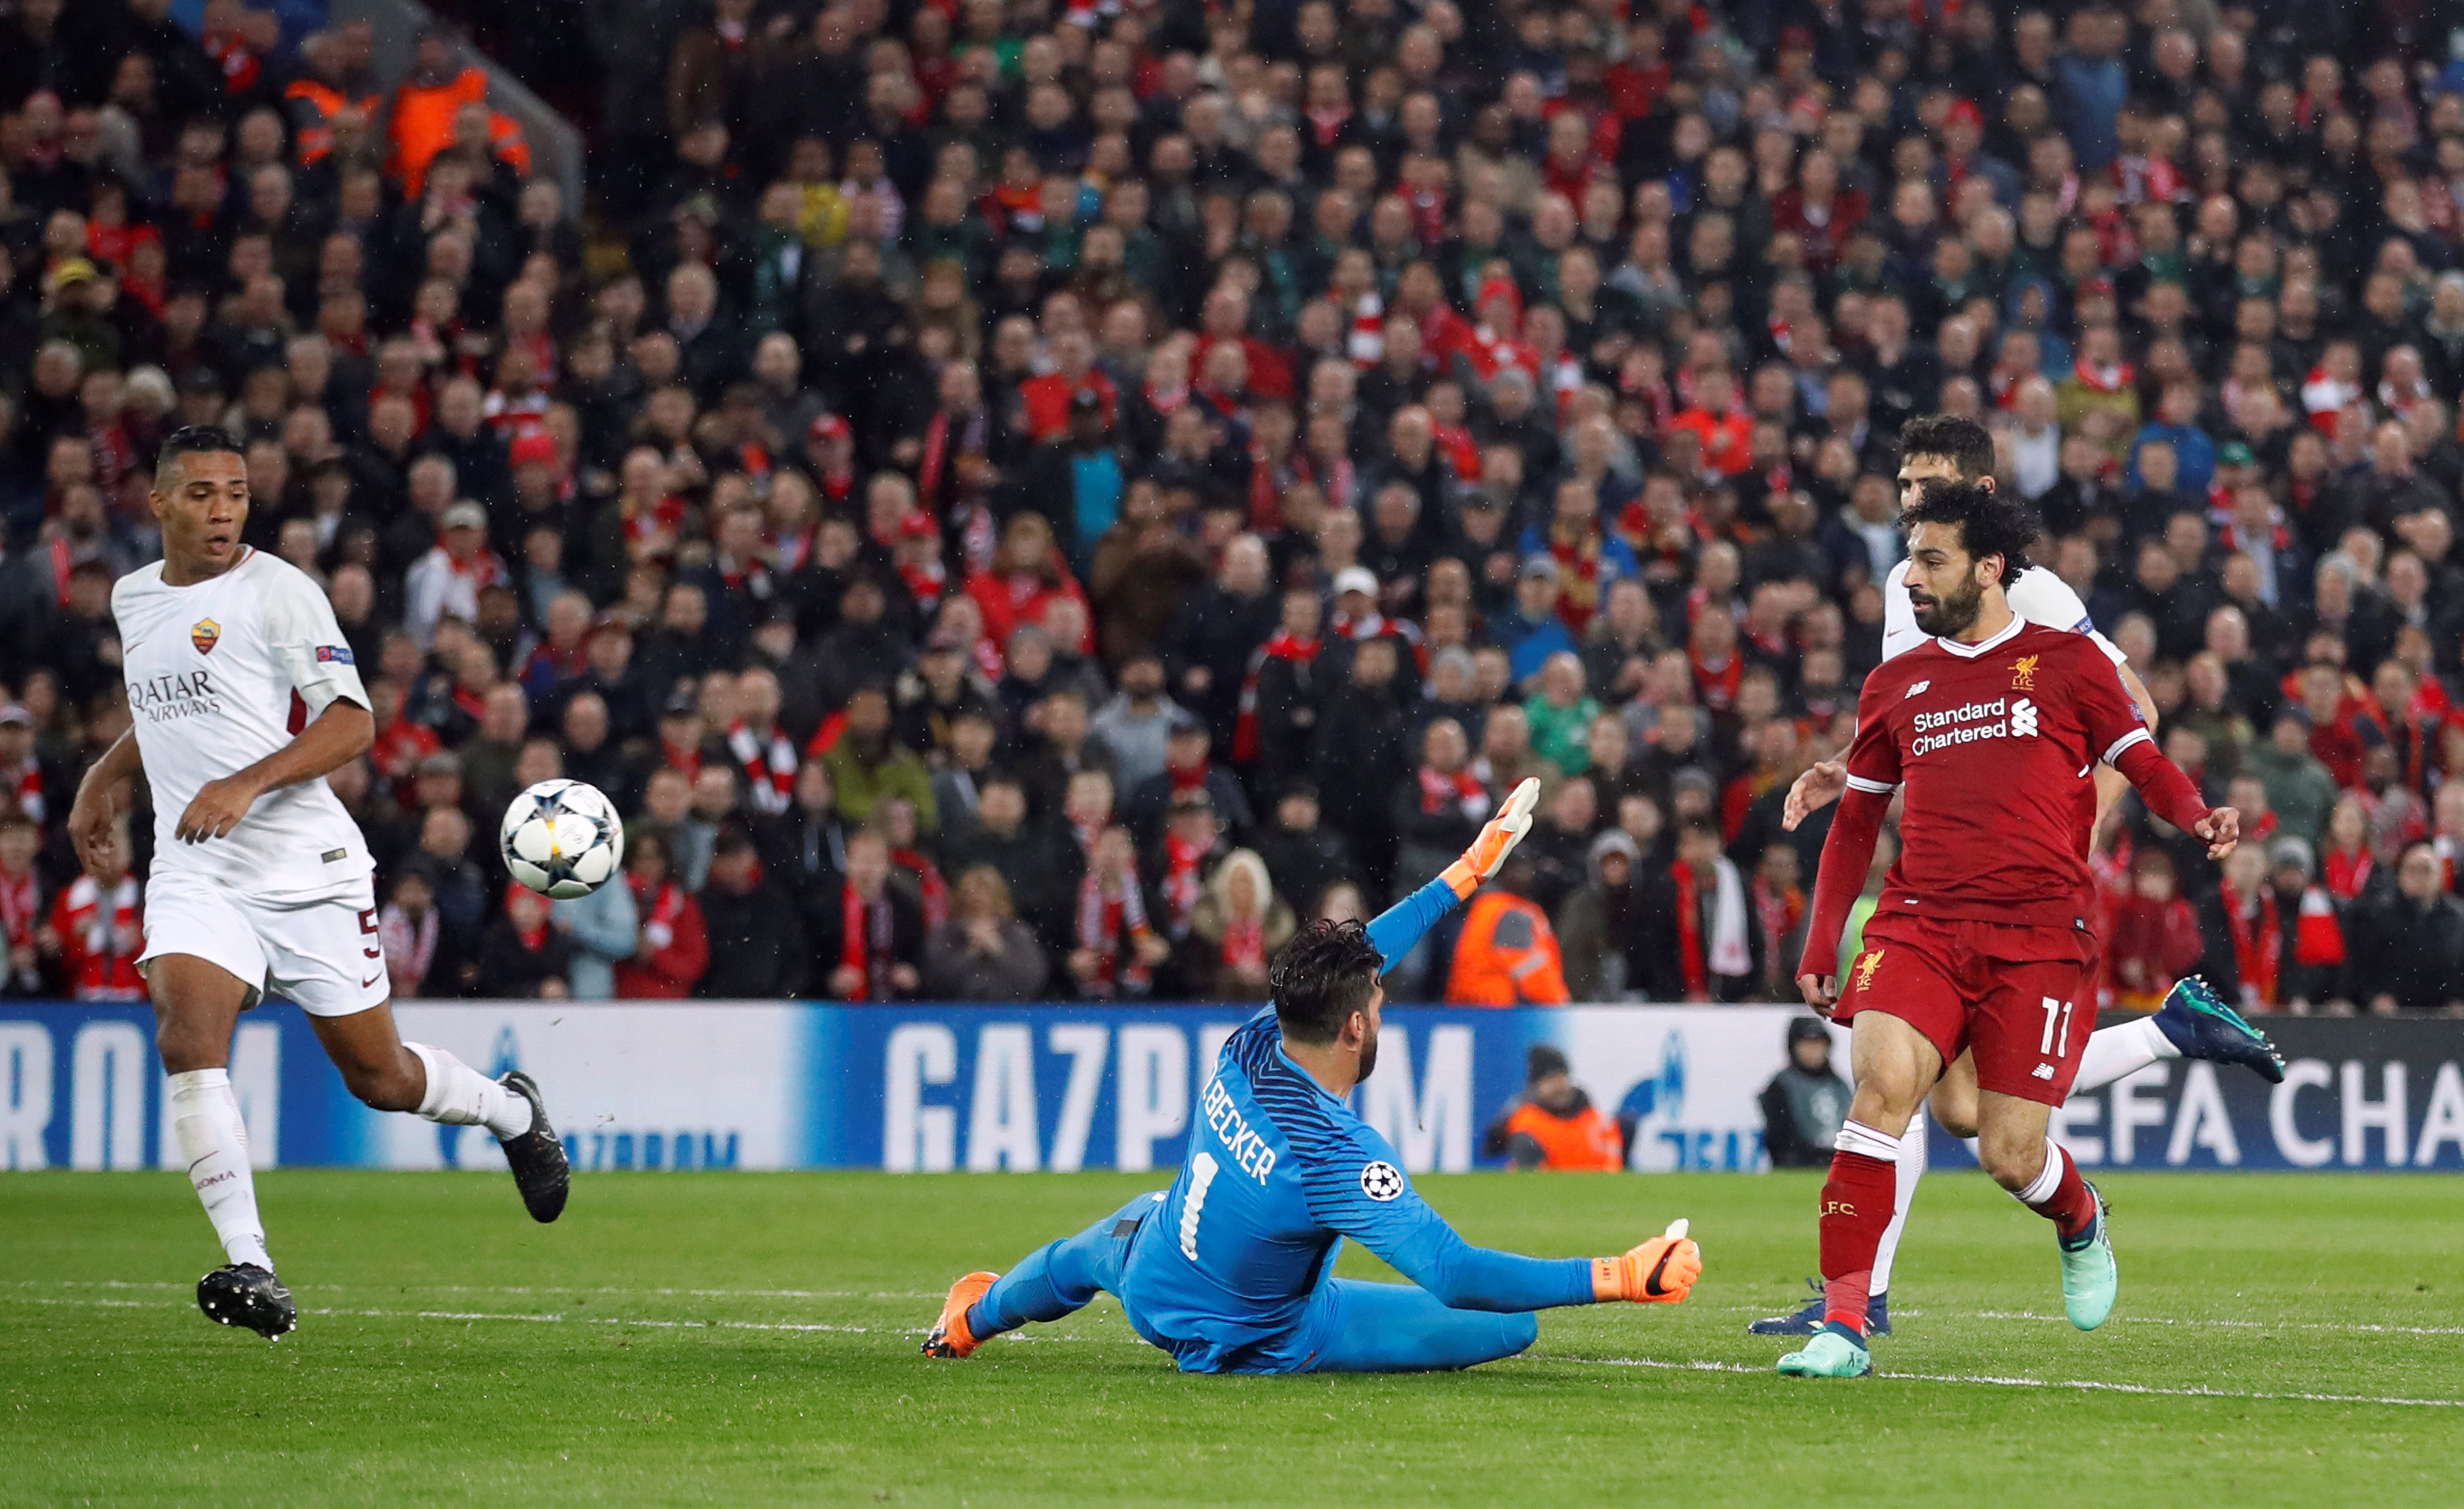 Pha dứt điểm nâng tỉ số lên 2-0 cho Liverpool của Salah. Ảnh: REUTERS